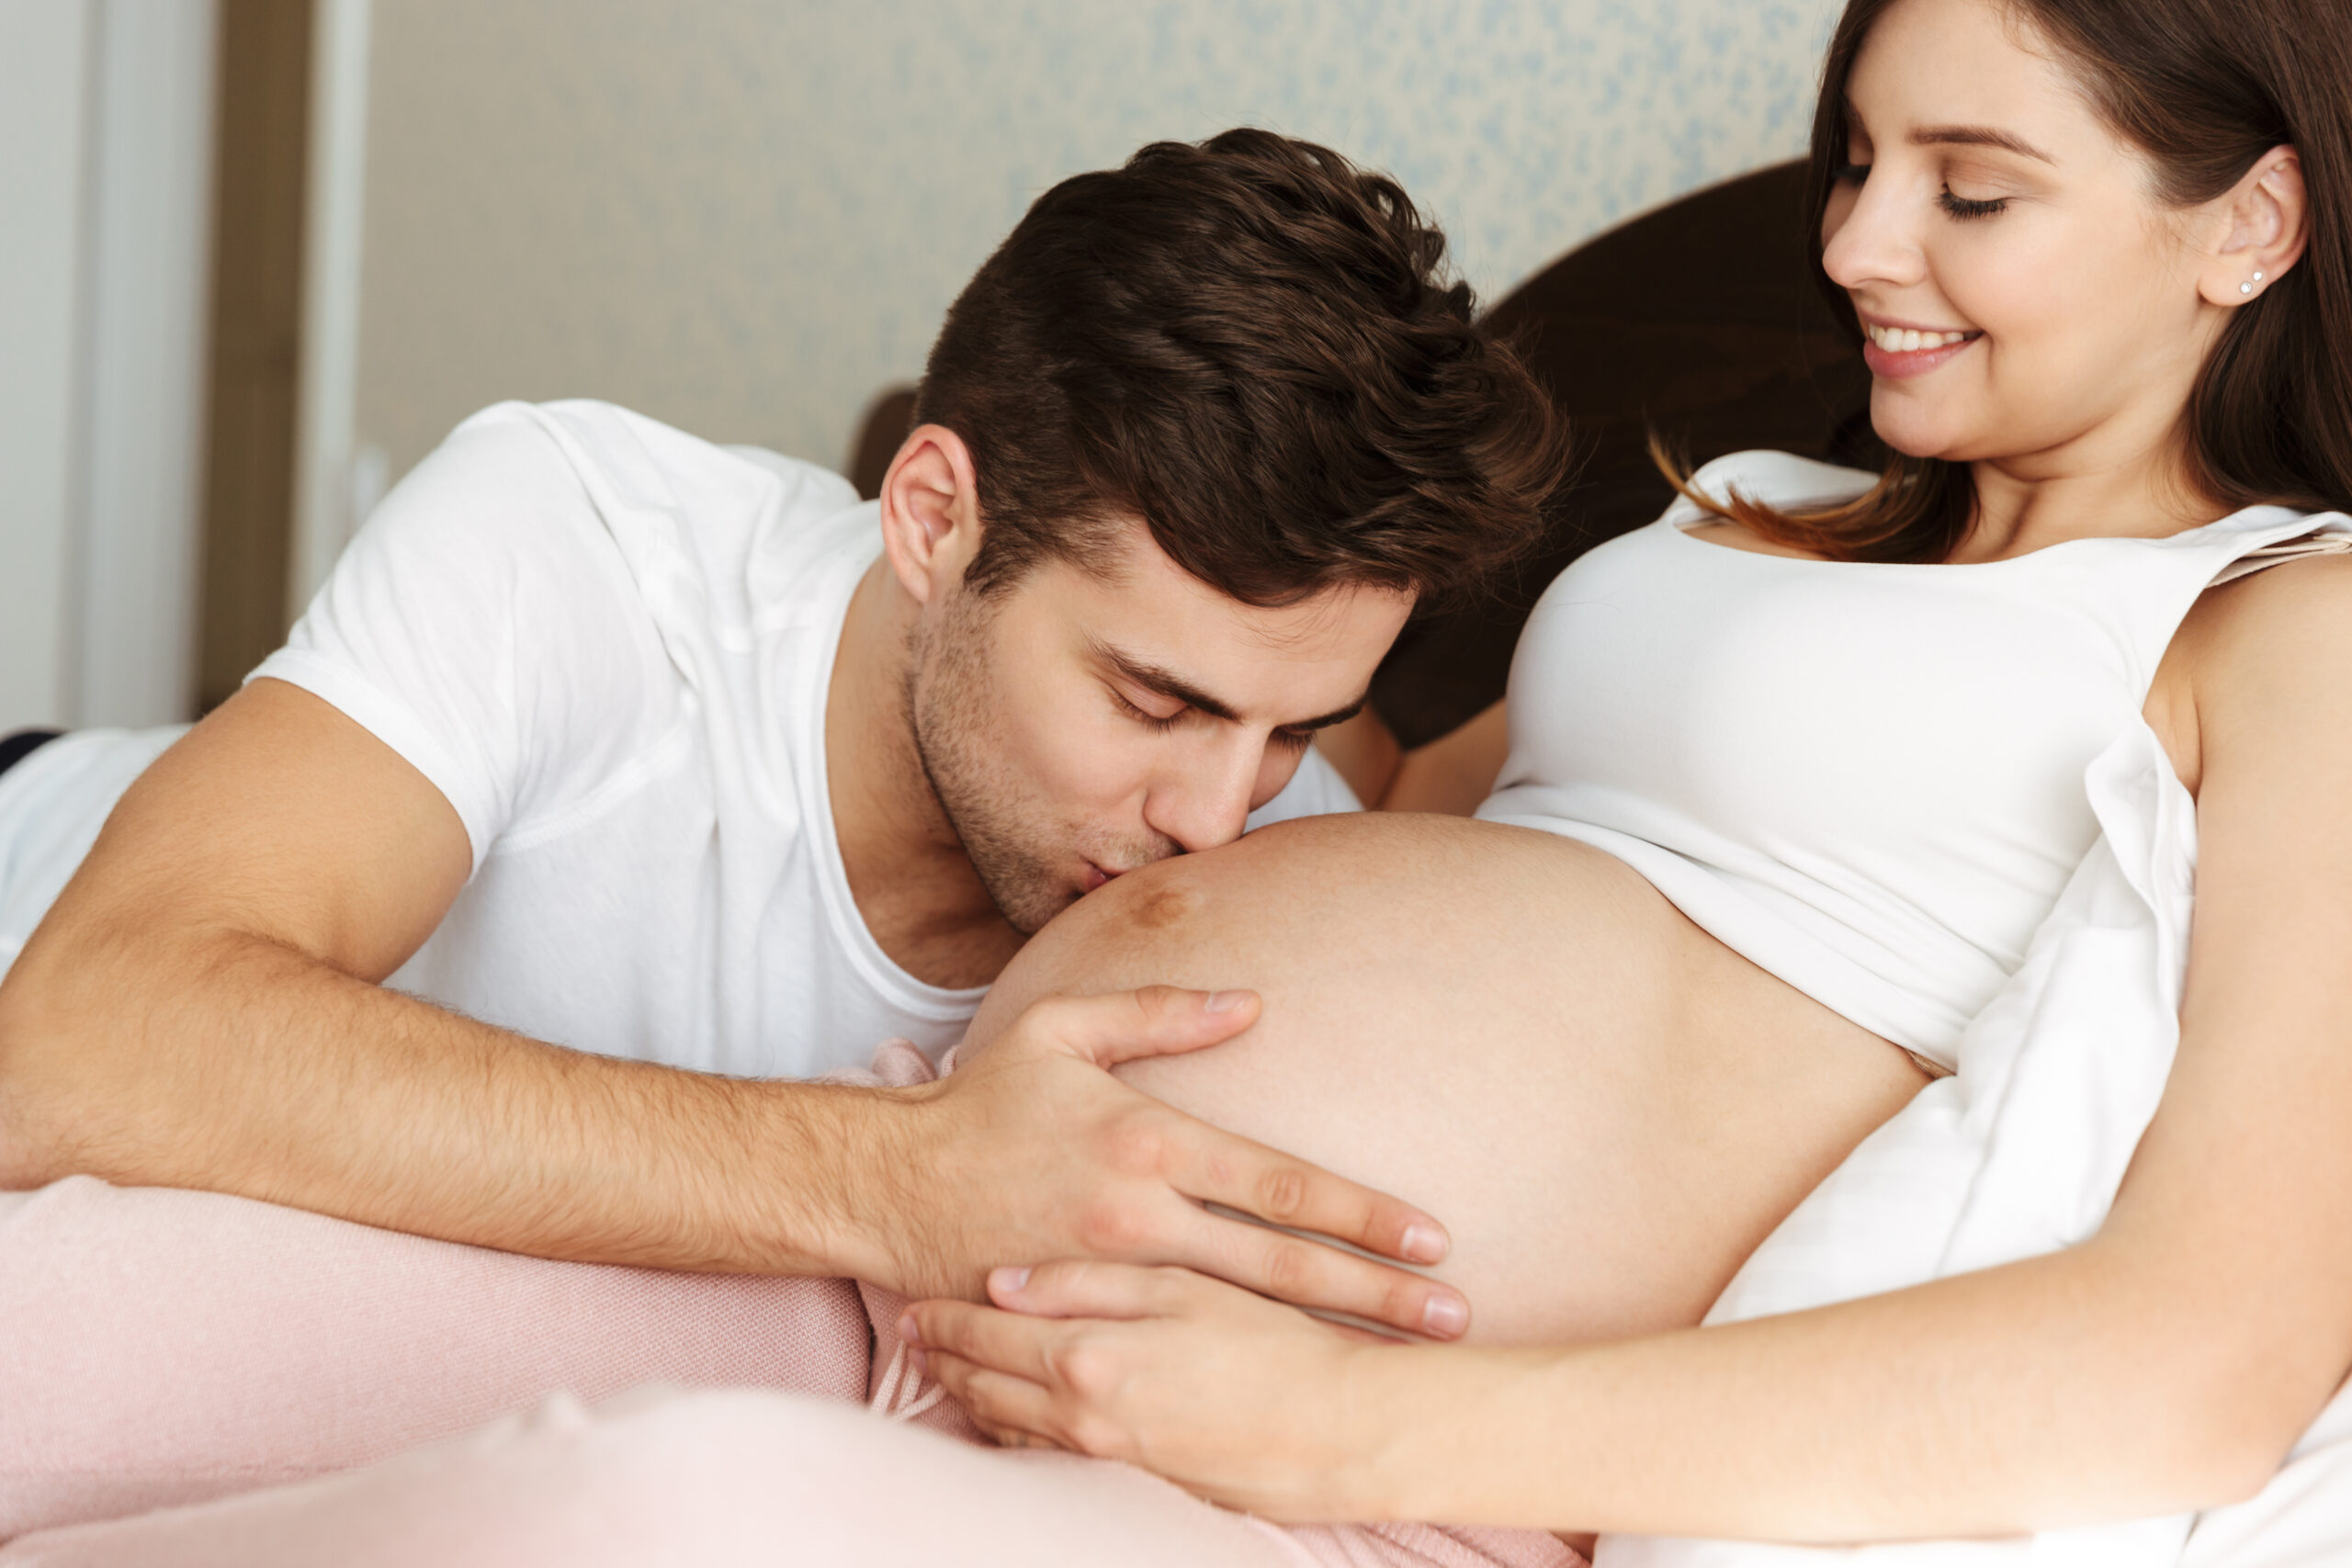 Hình ảnh: Tâm trạng mẹ sẽ tốt hơn khi ngắm nhìn bố và thai nhi trò chuyện.